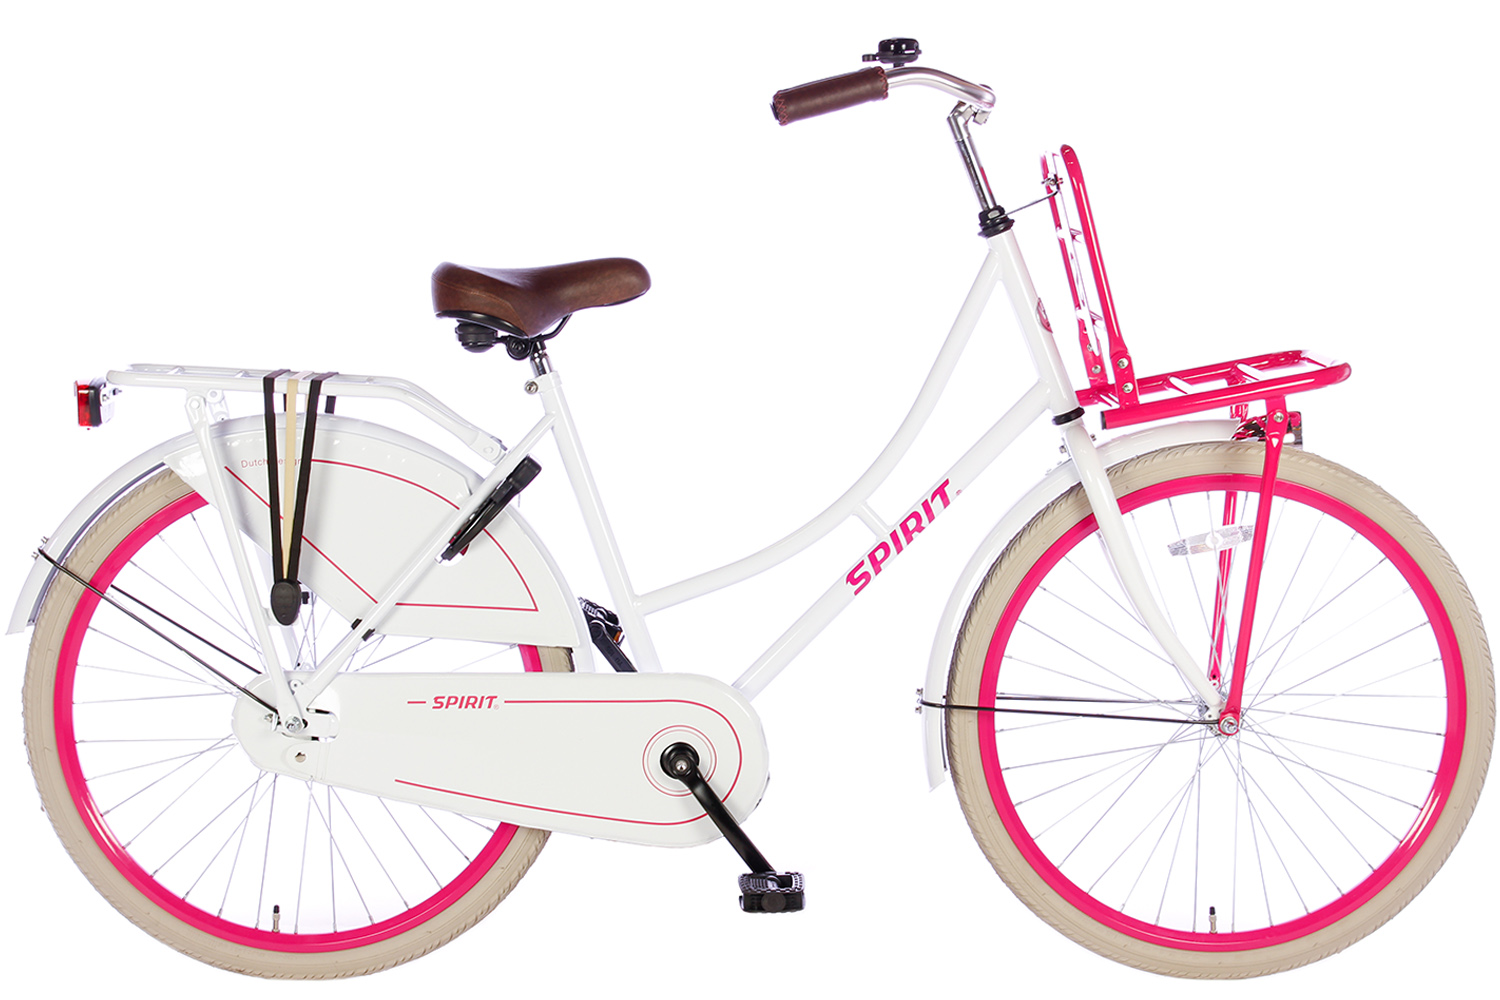 Oxide Verloren Zakenman Spirit Omafiets Wit-Roze 26 inch(wordt 100% rijklaar geleverd) - Bike 2 Bike